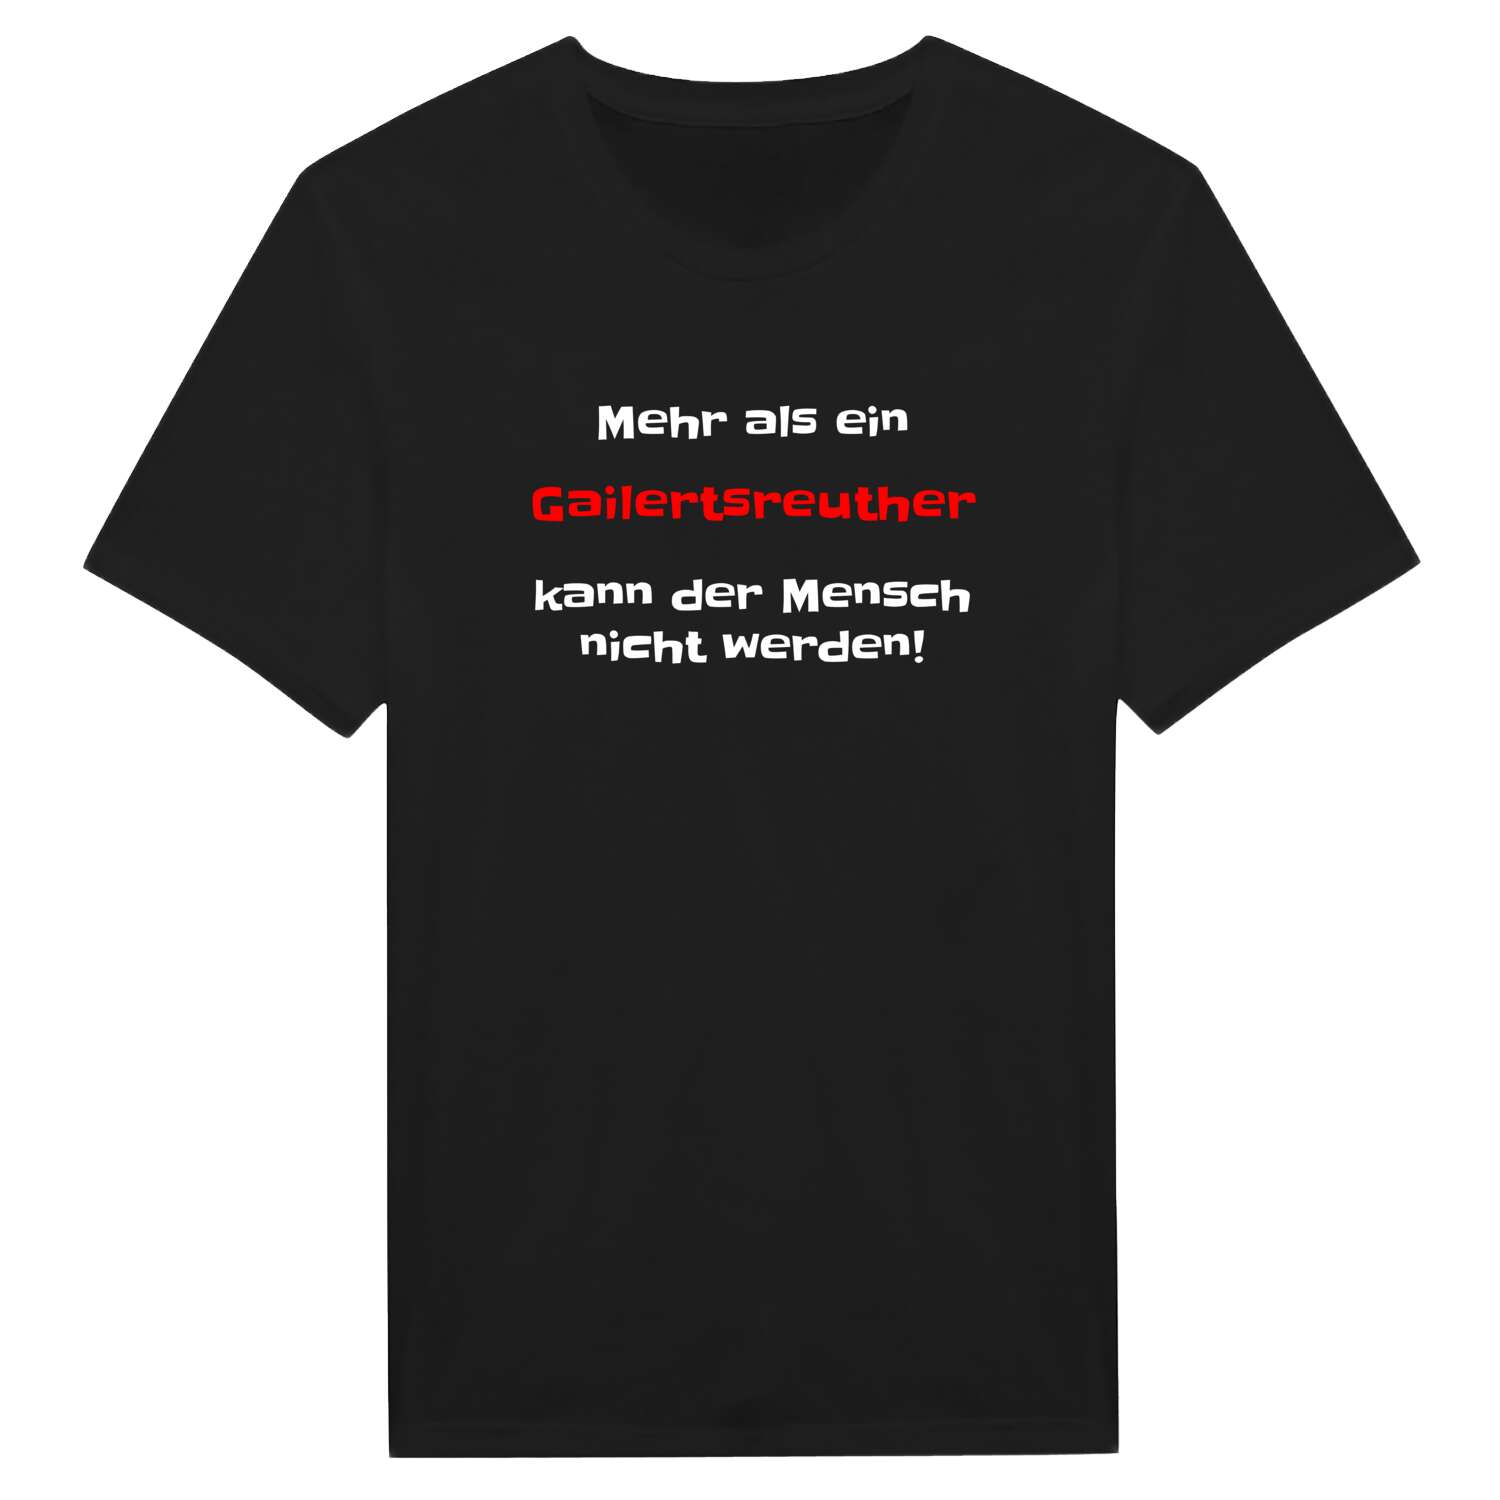 Gailertsreuth T-Shirt »Mehr als ein«